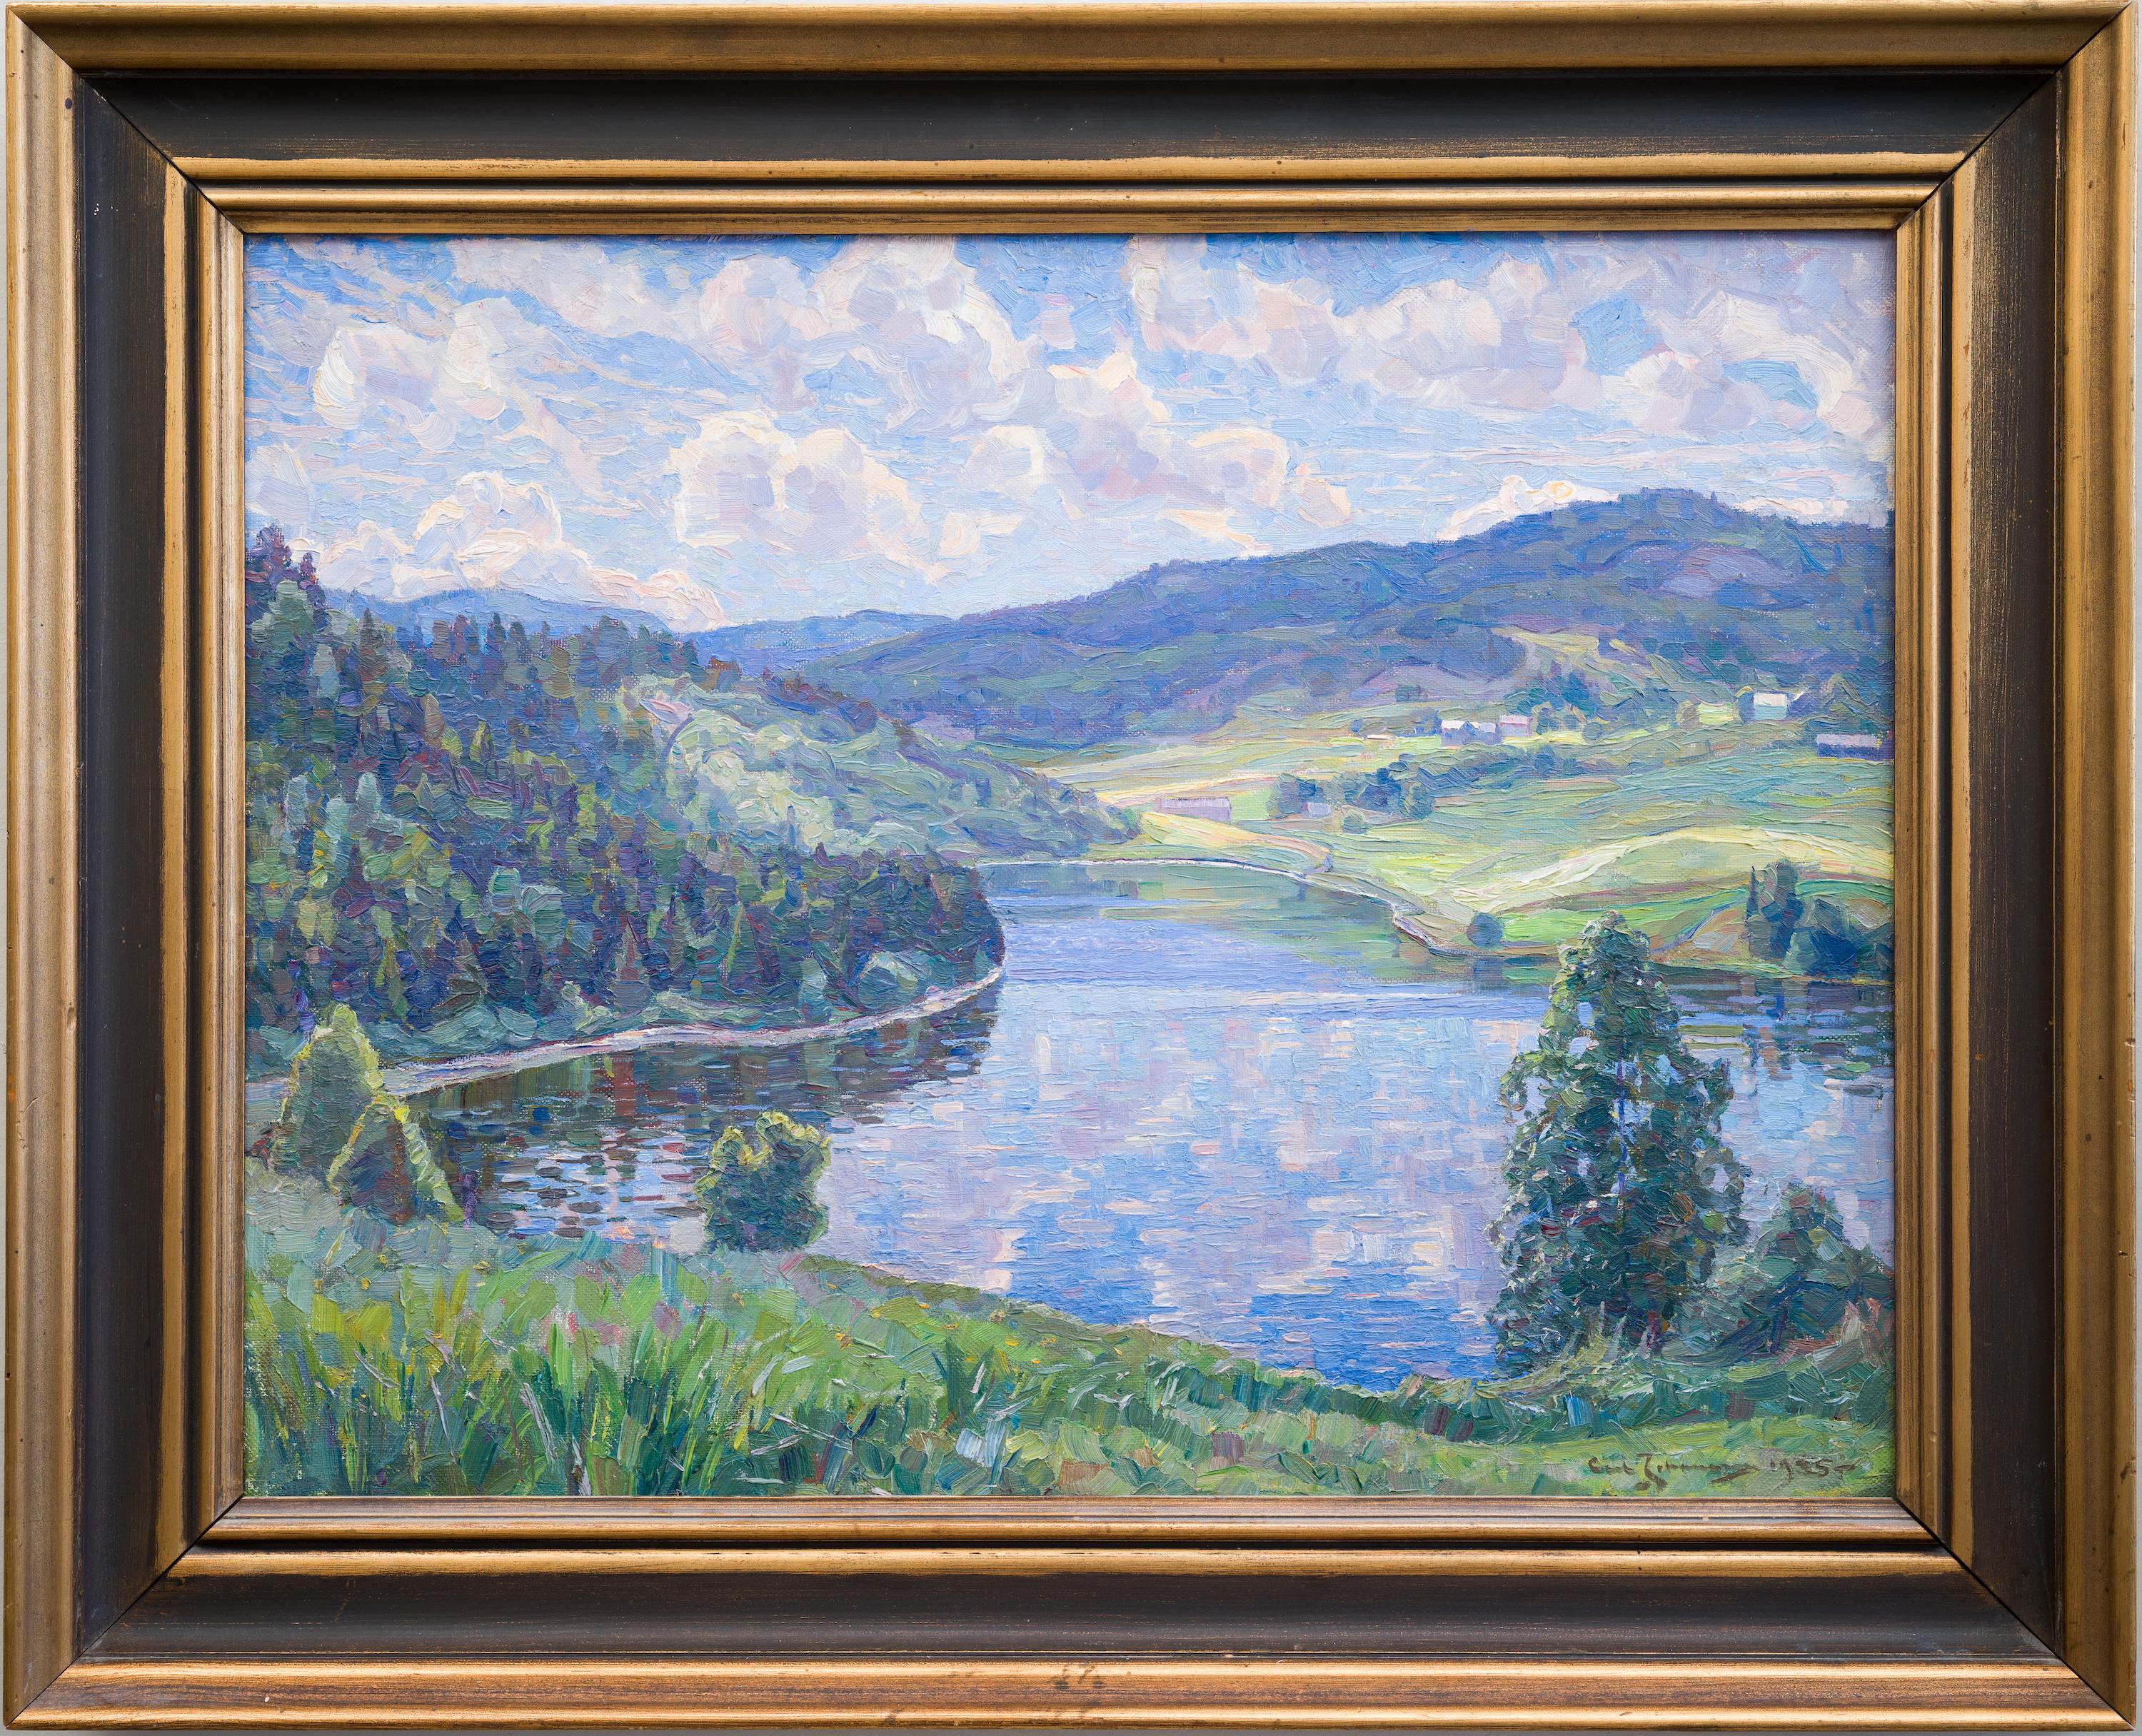 Landschaft aus Nordingrå, 1935 von Ultramarine Johansson – Painting von Carl Johansson 